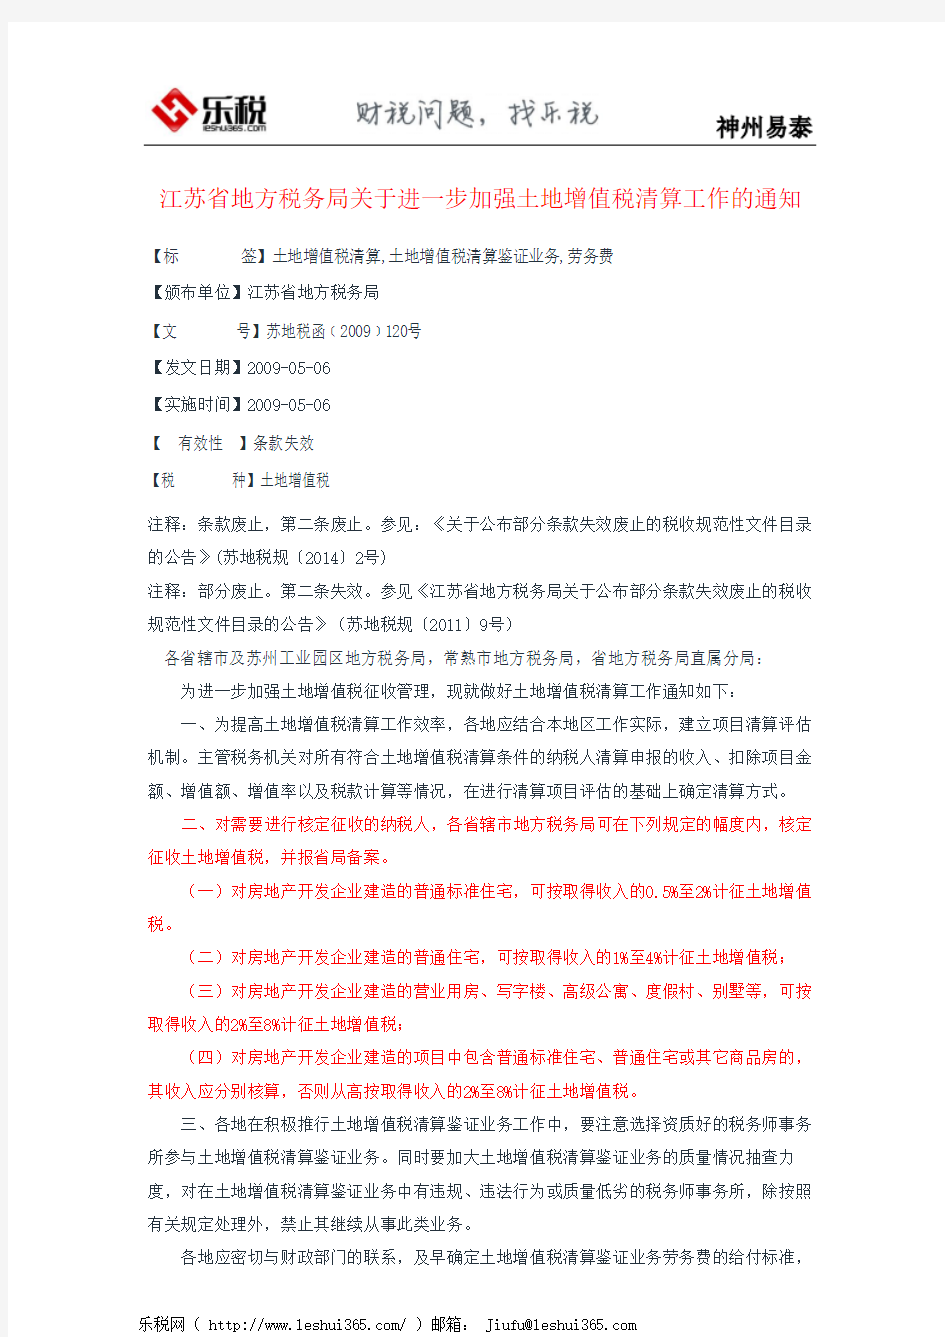 江苏省地方税务局关于进一步加强土地增值税清算工作的通知